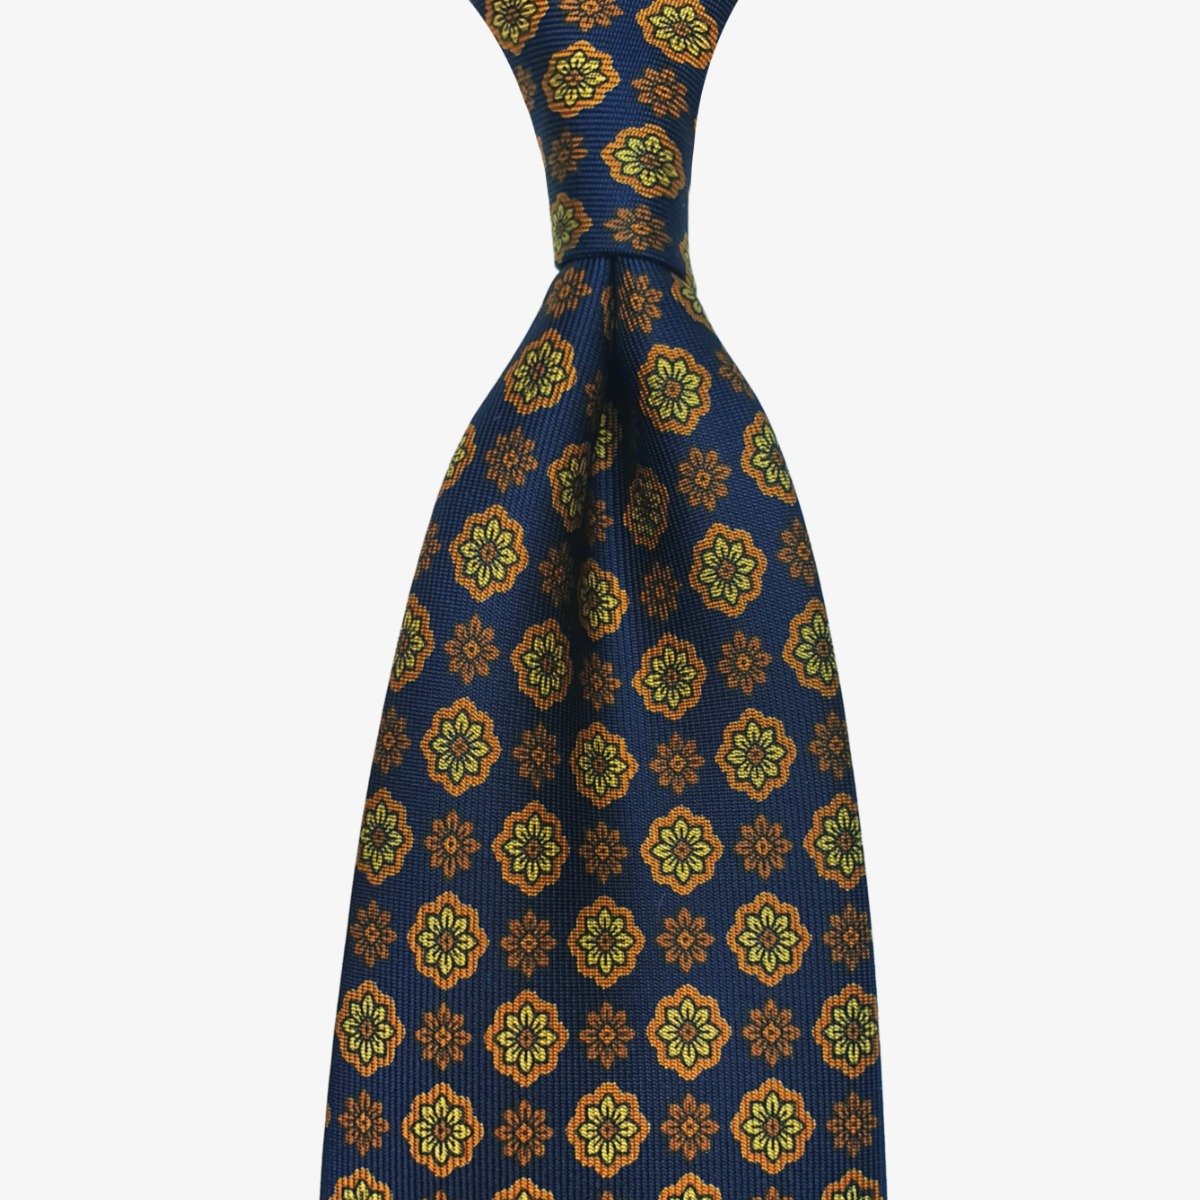 Shibumi Firenze navy blue silk tie with yellow flowers